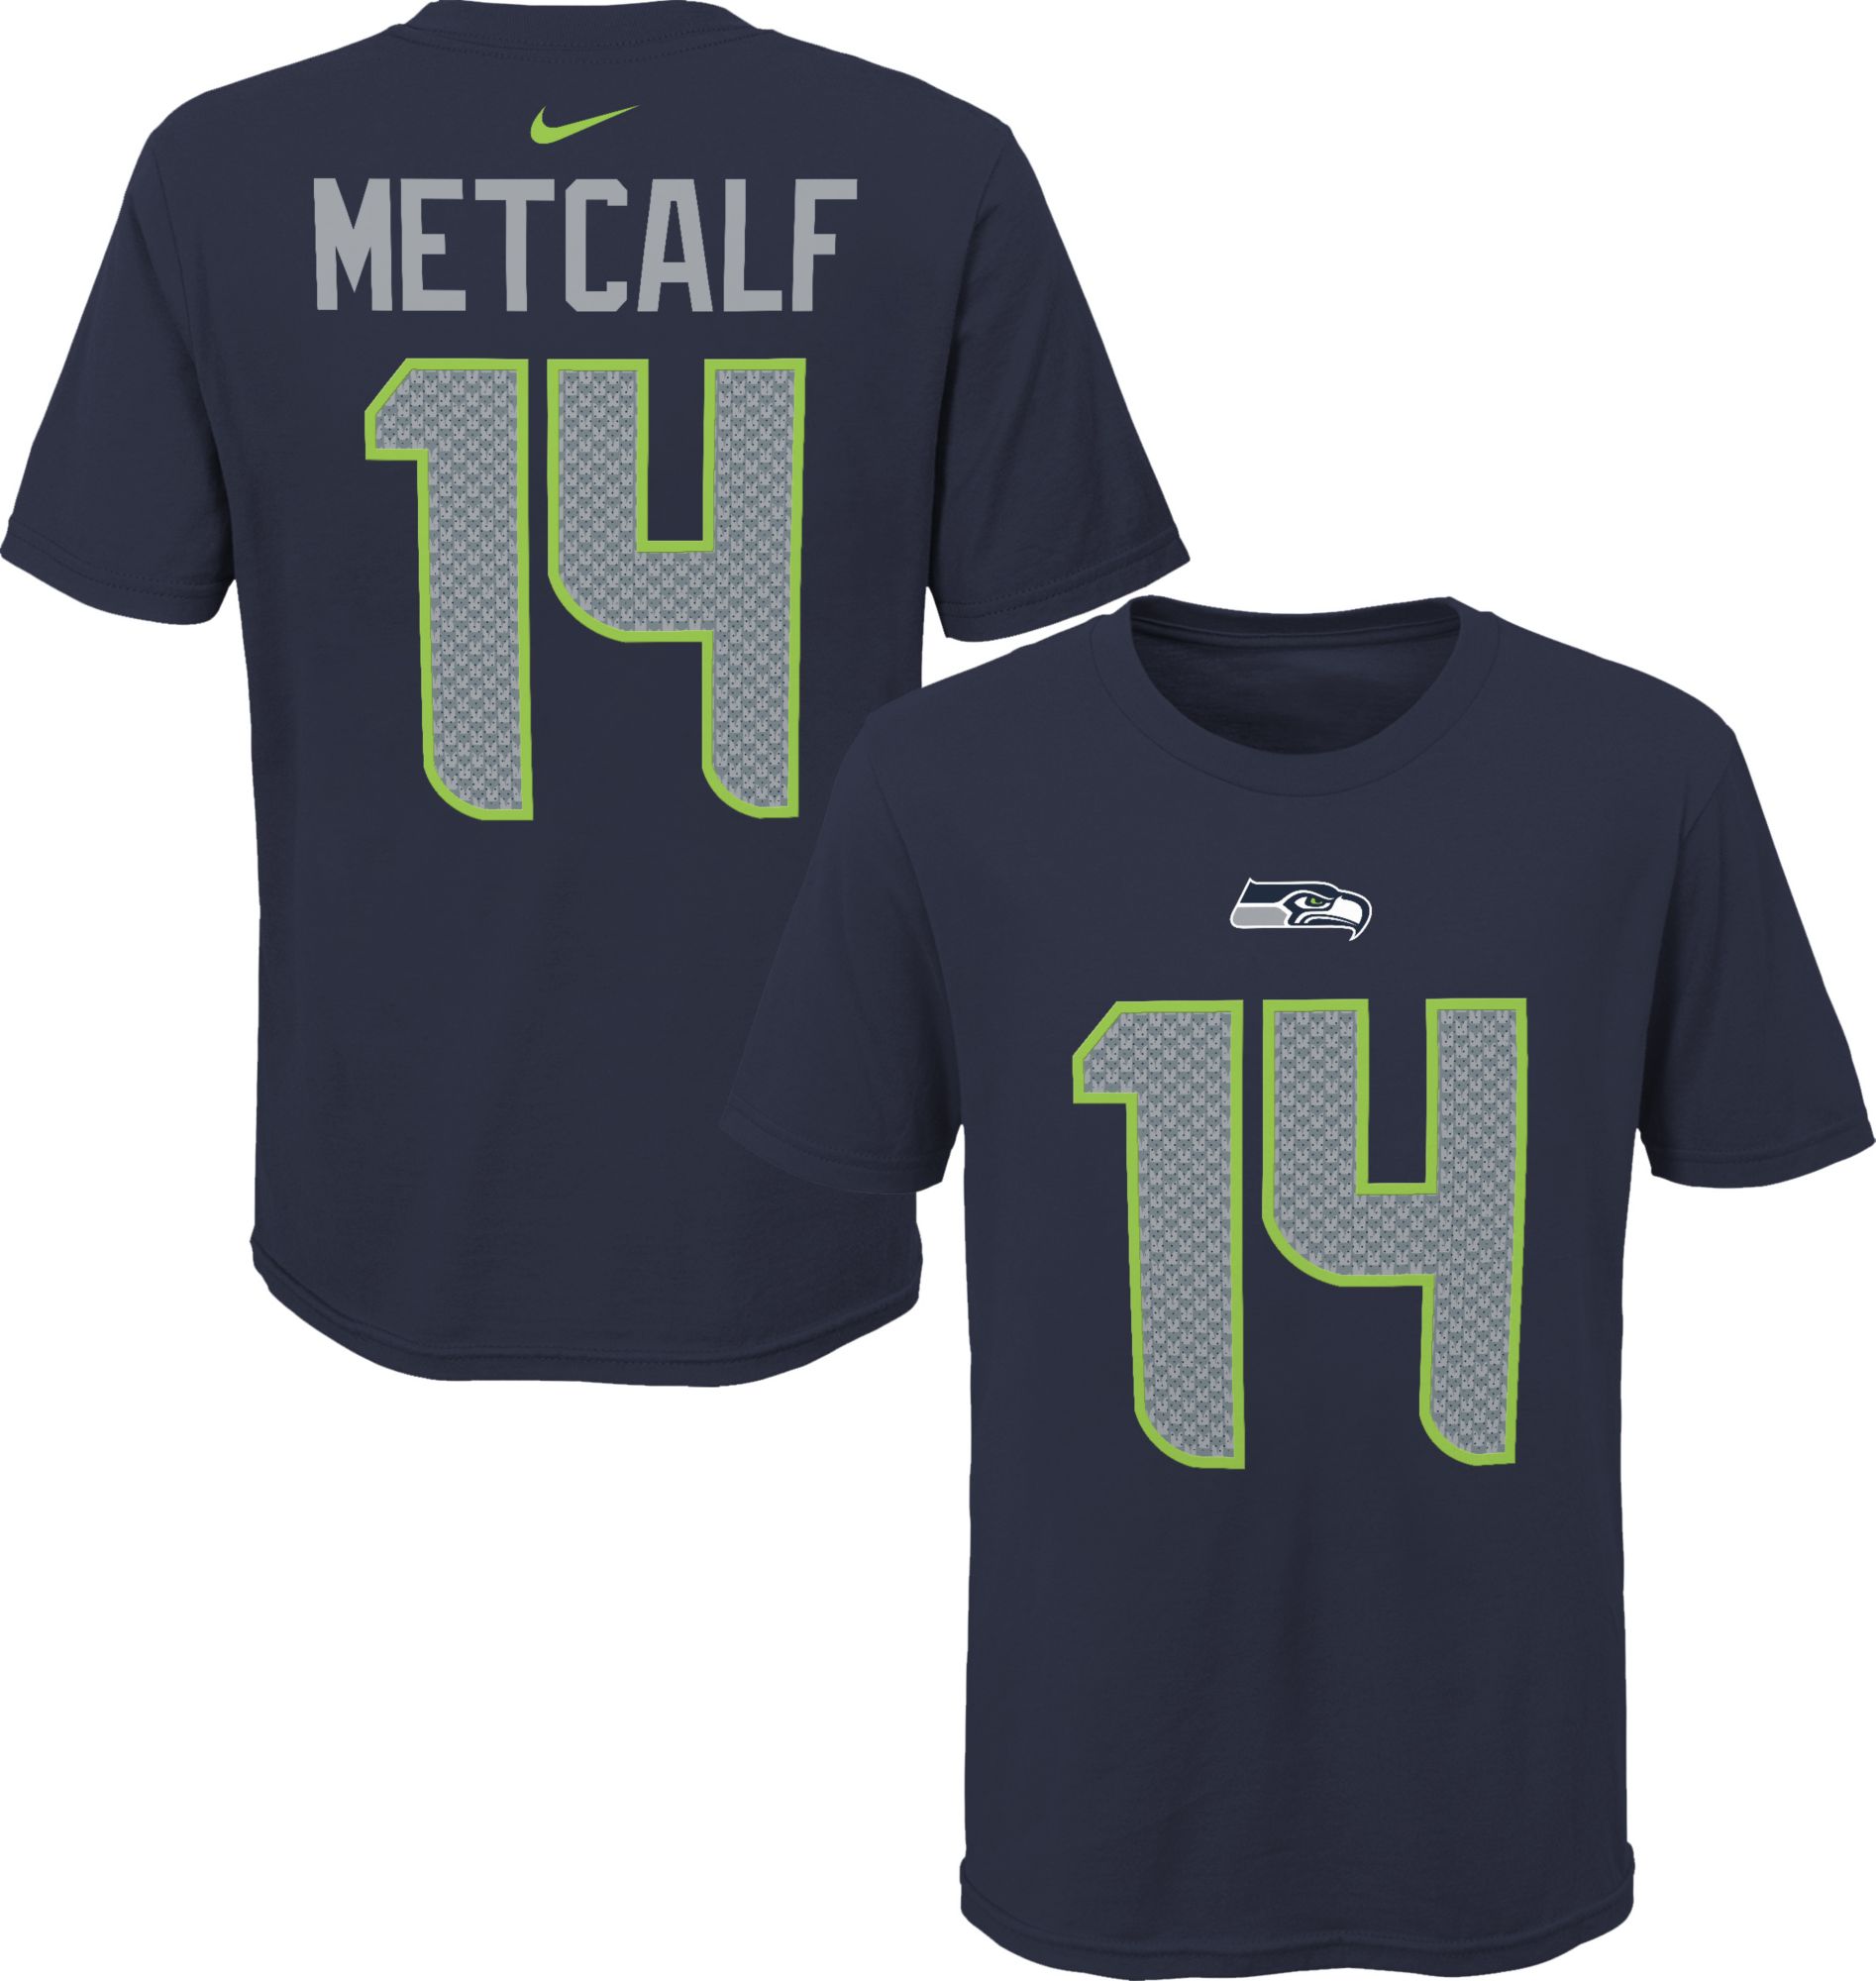 metcalf shirt